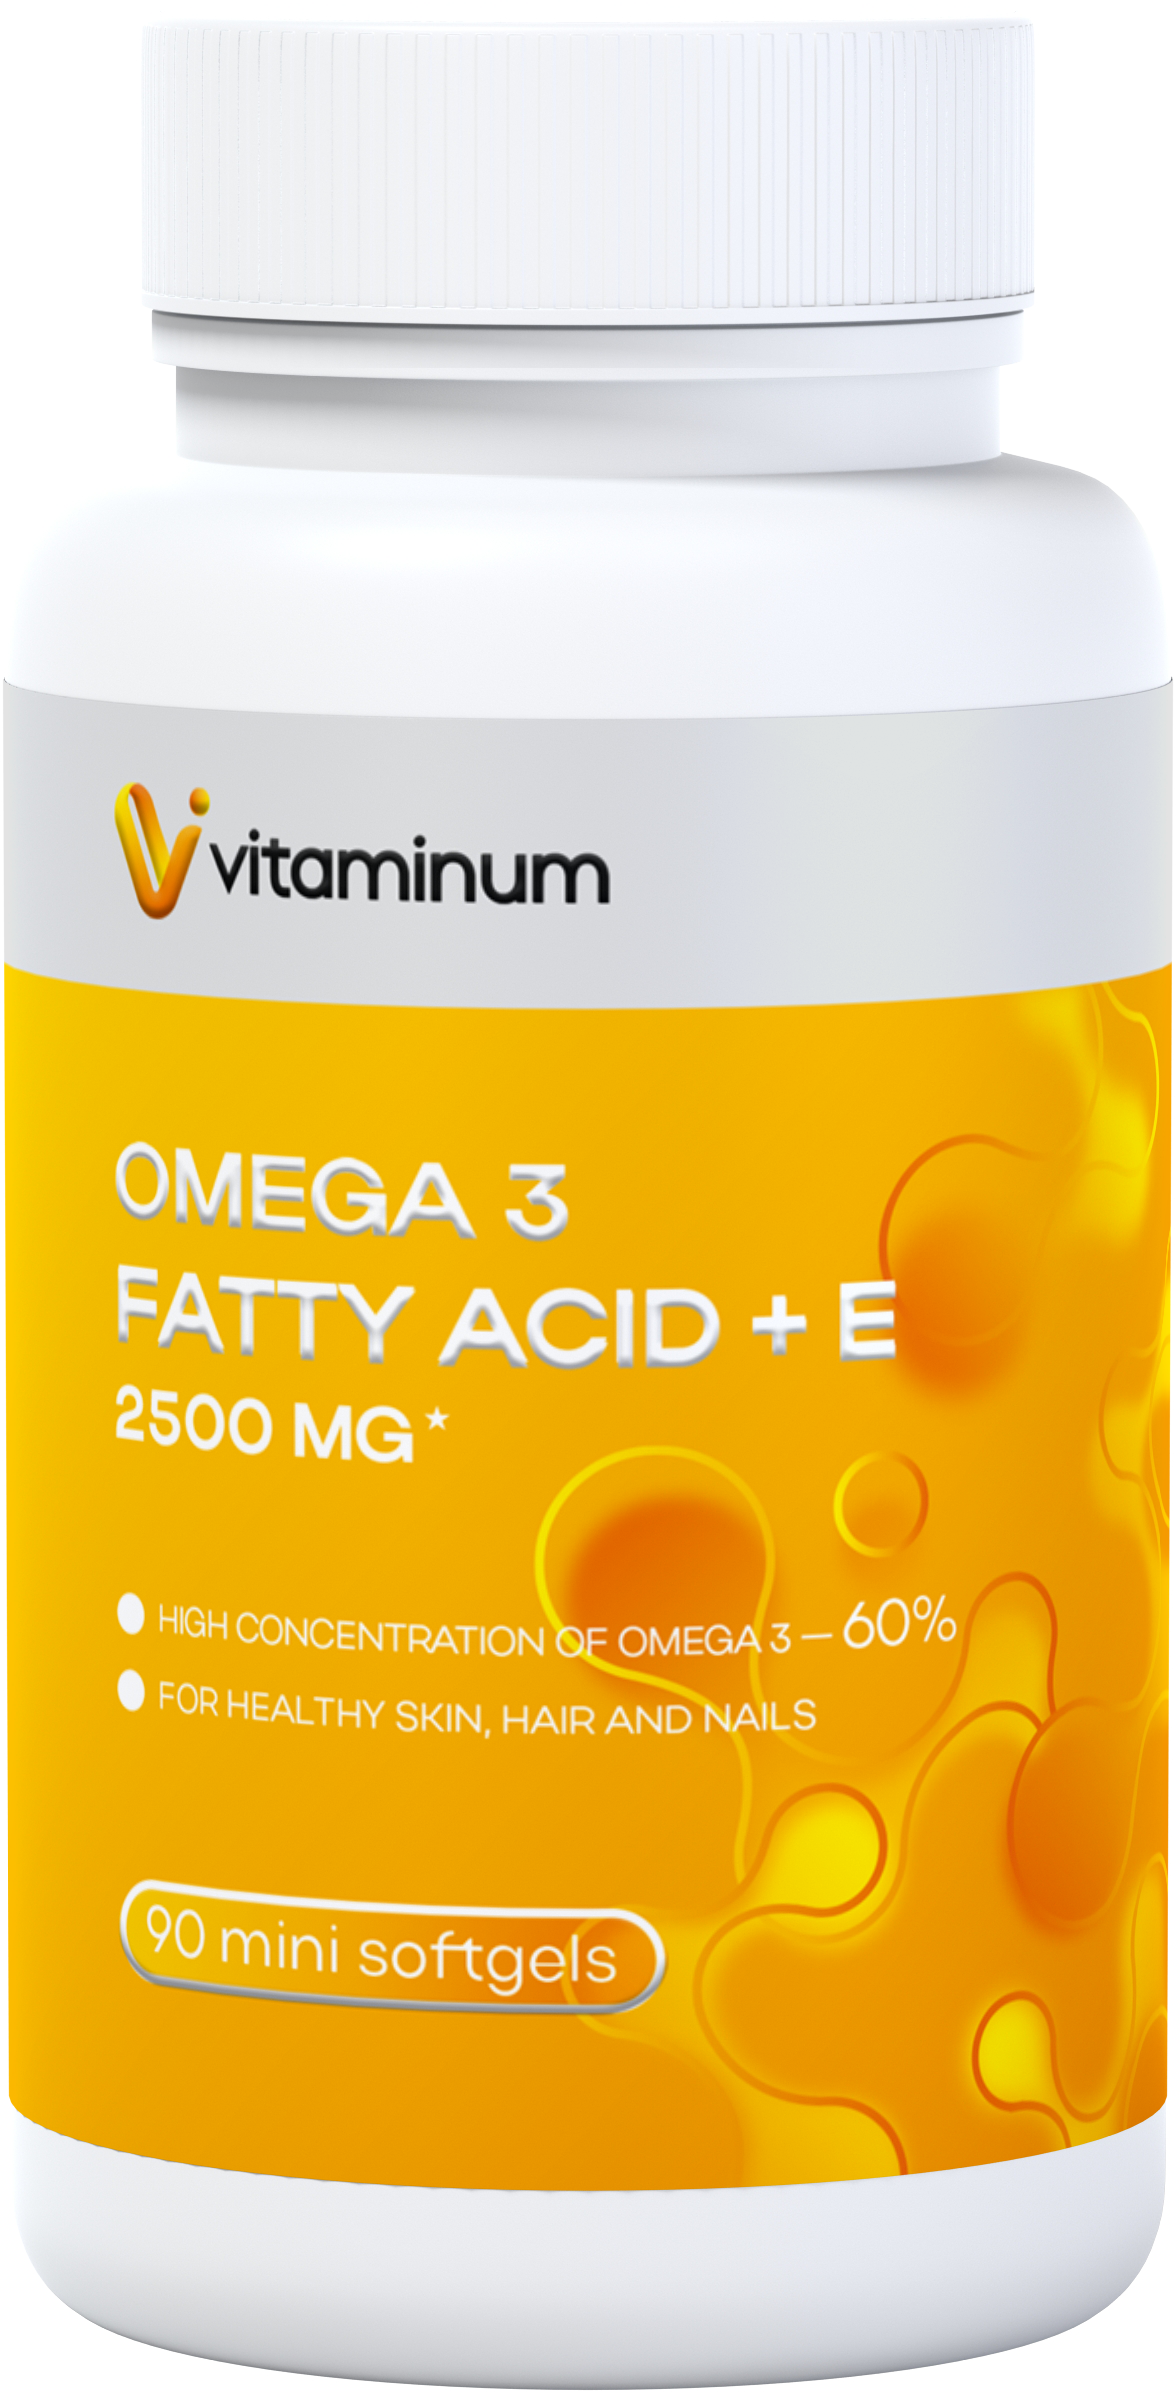  Vitaminum ОМЕГА 3 60% + витамин Е (2500 MG*) 90 капсул 700 мг   в Нижнекамске